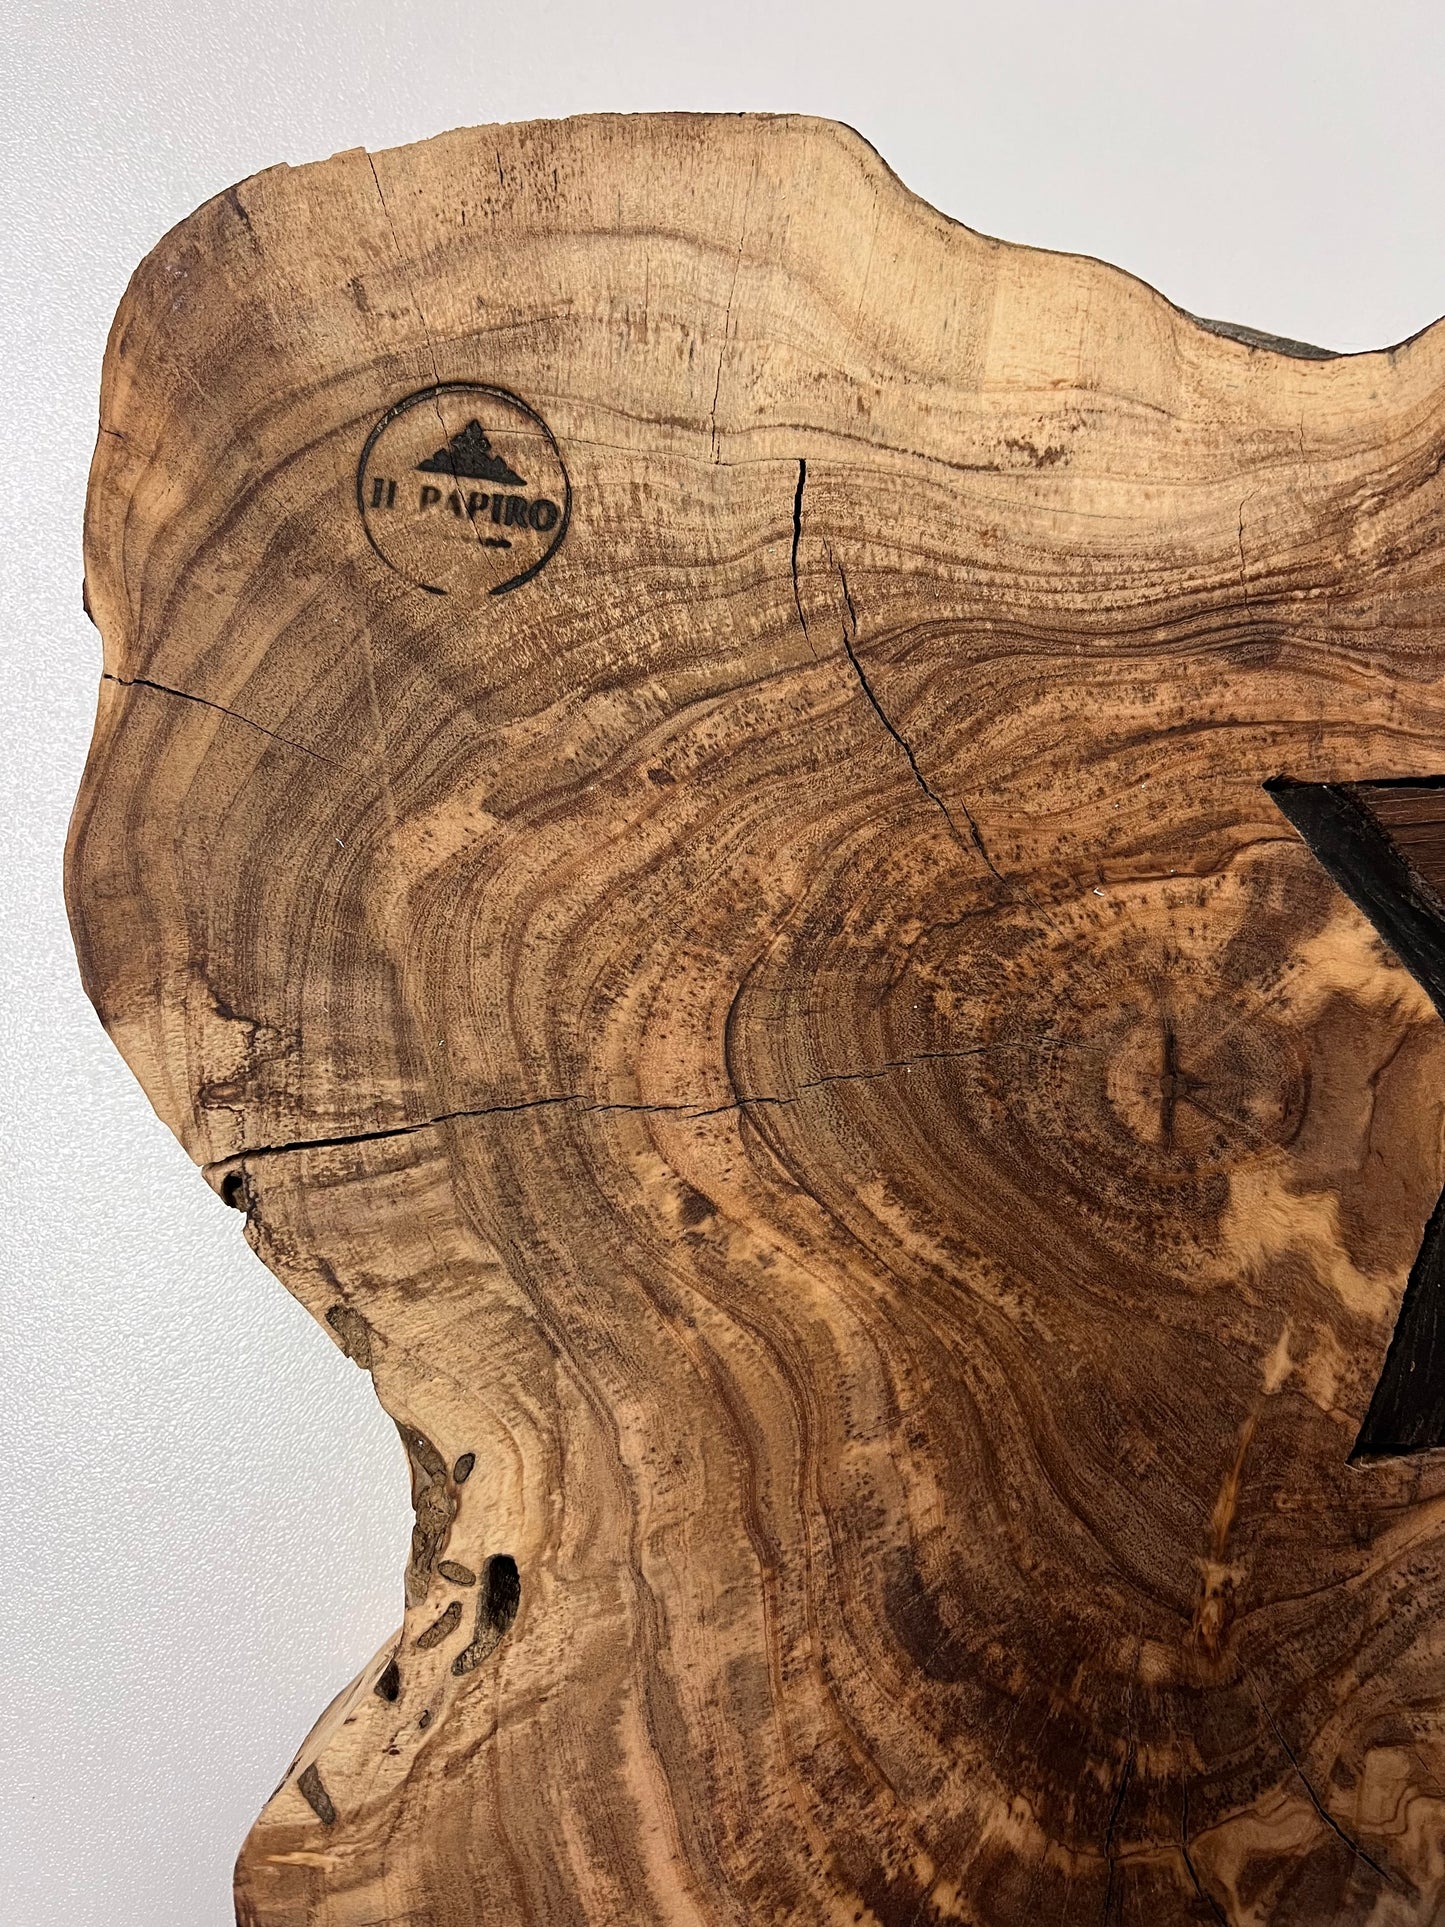 Tagliere in legno a forma di chitarra